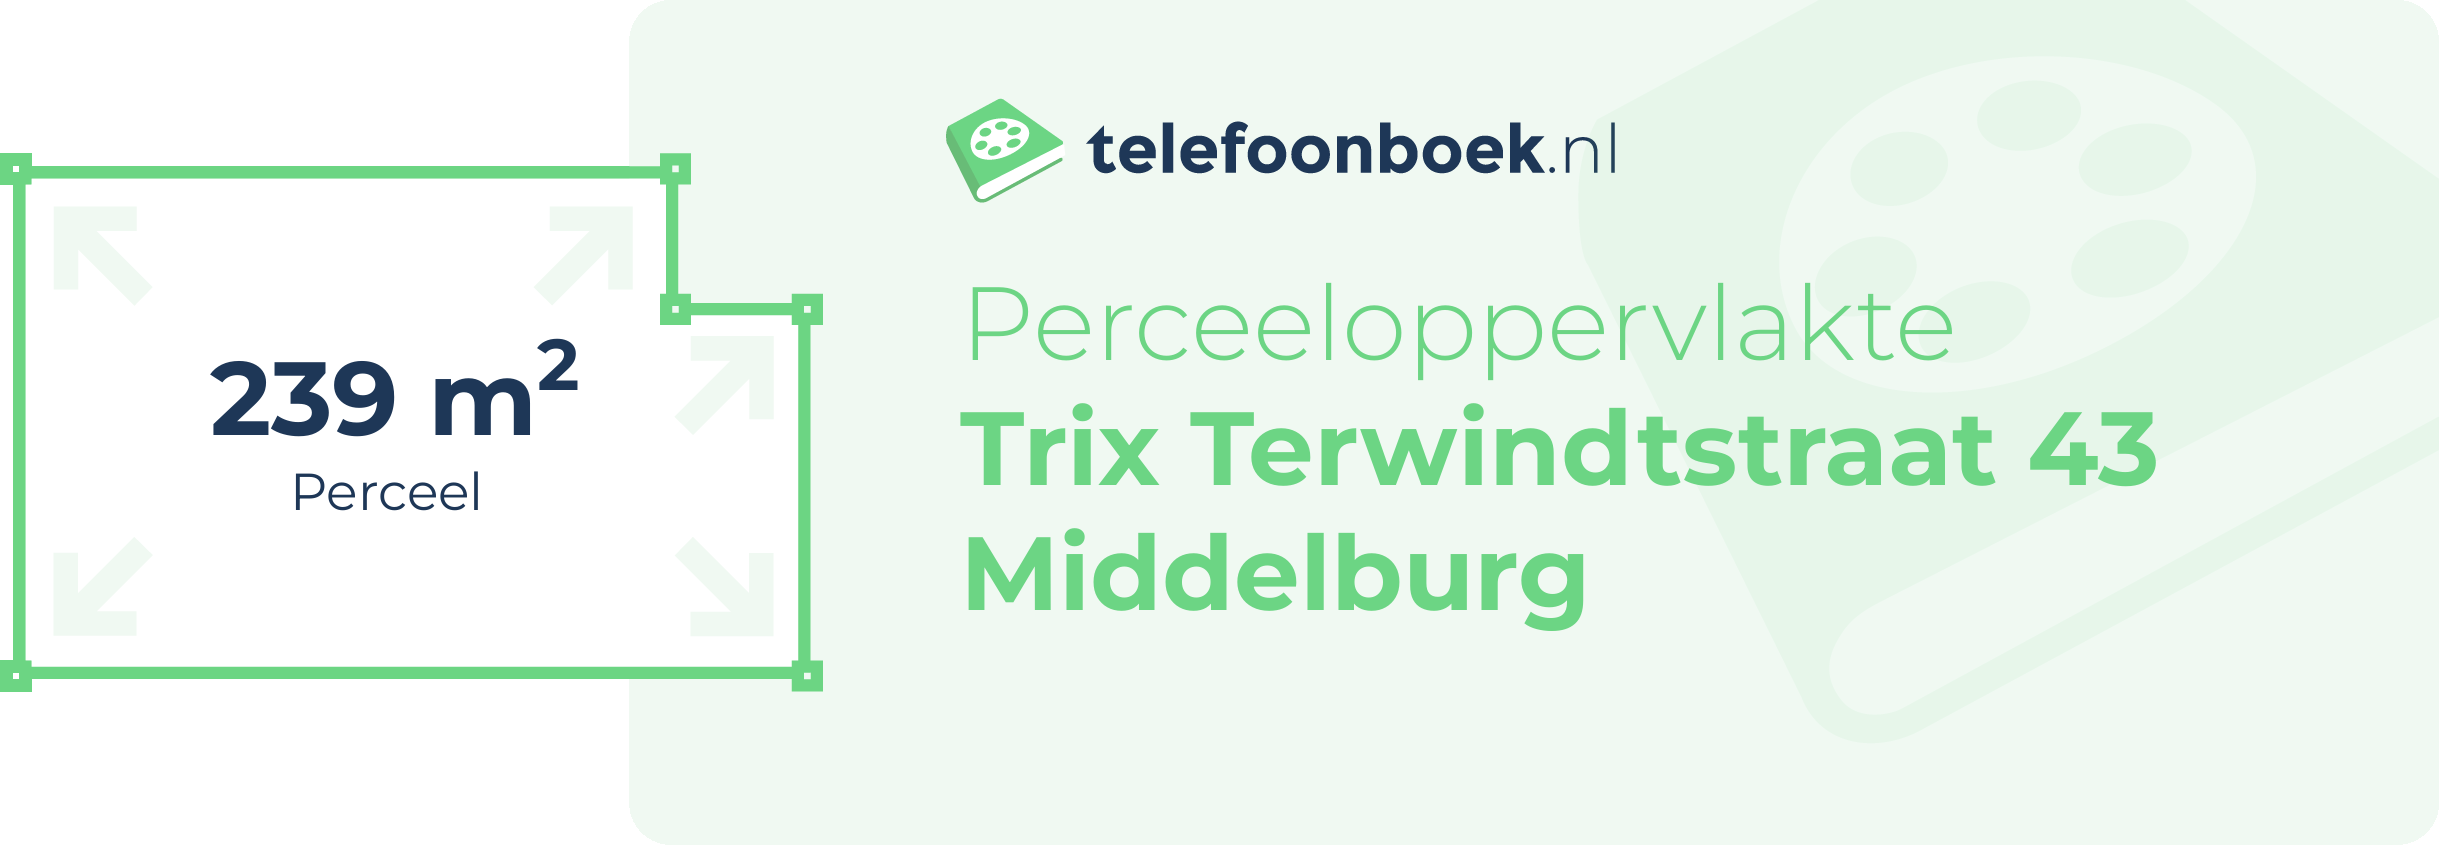 Perceeloppervlakte Trix Terwindtstraat 43 Middelburg